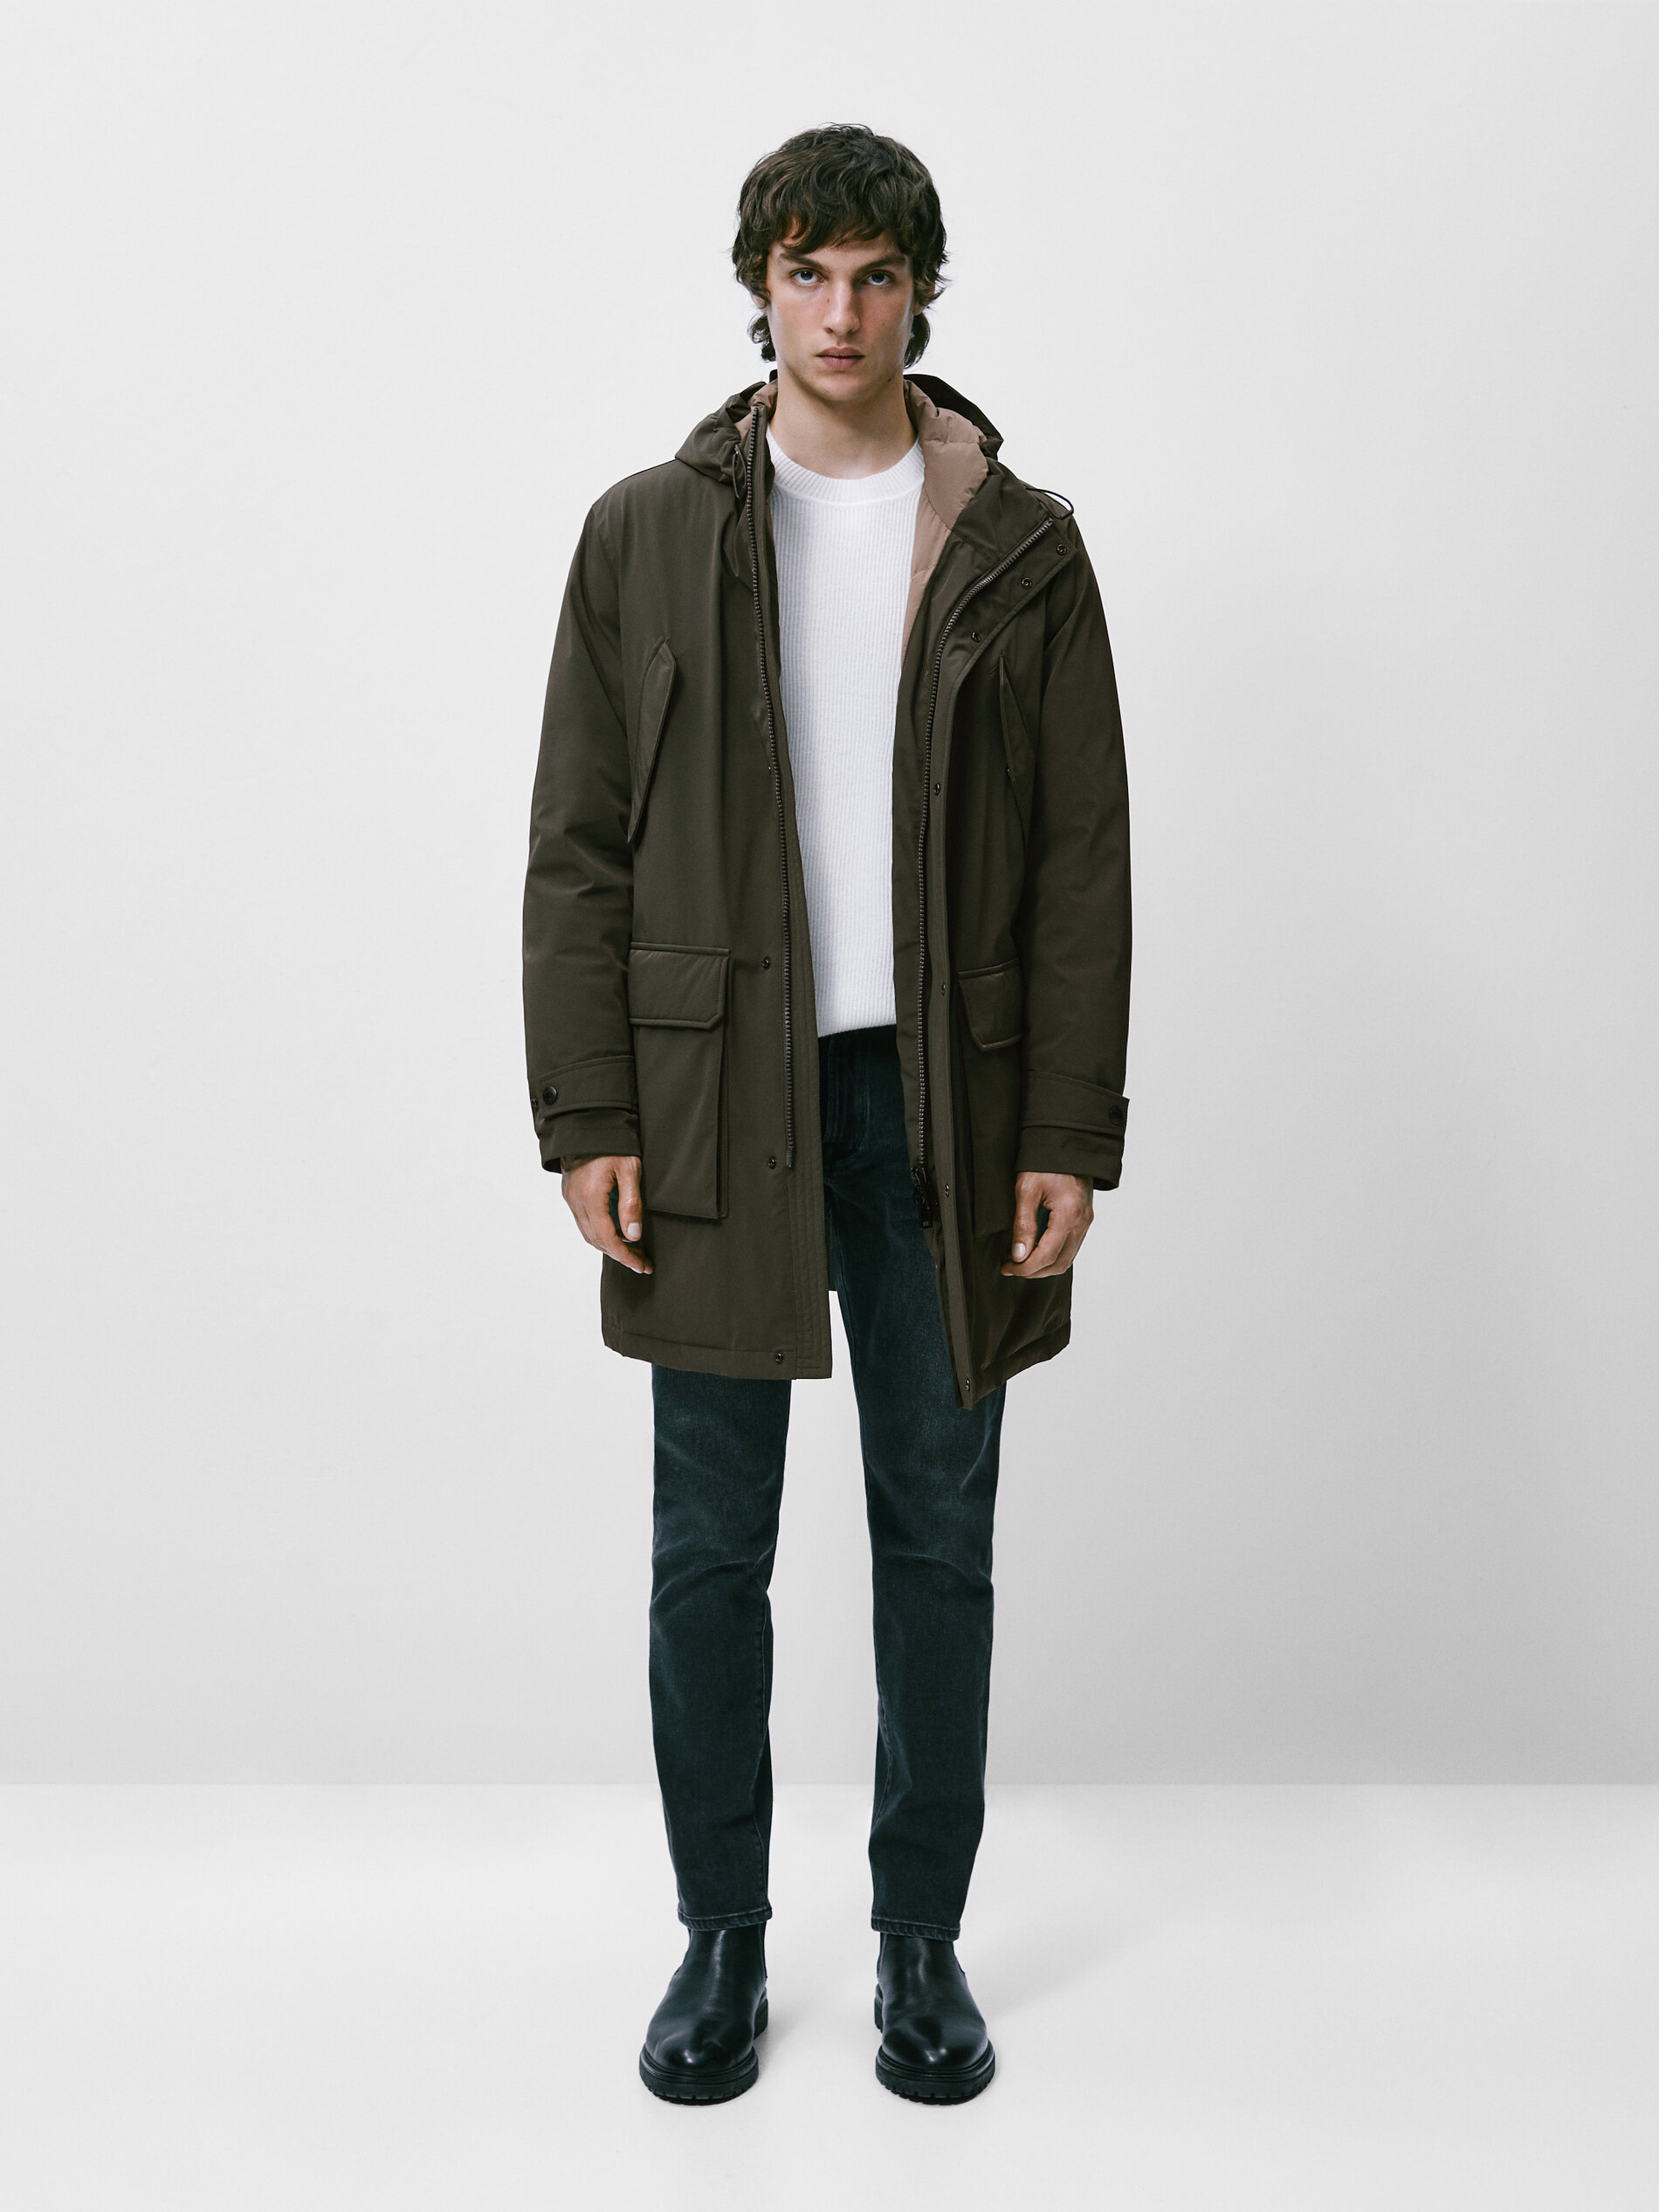 discount 94% Massimo Dutti Long coat MEN FASHION Coats Basic Black XL 